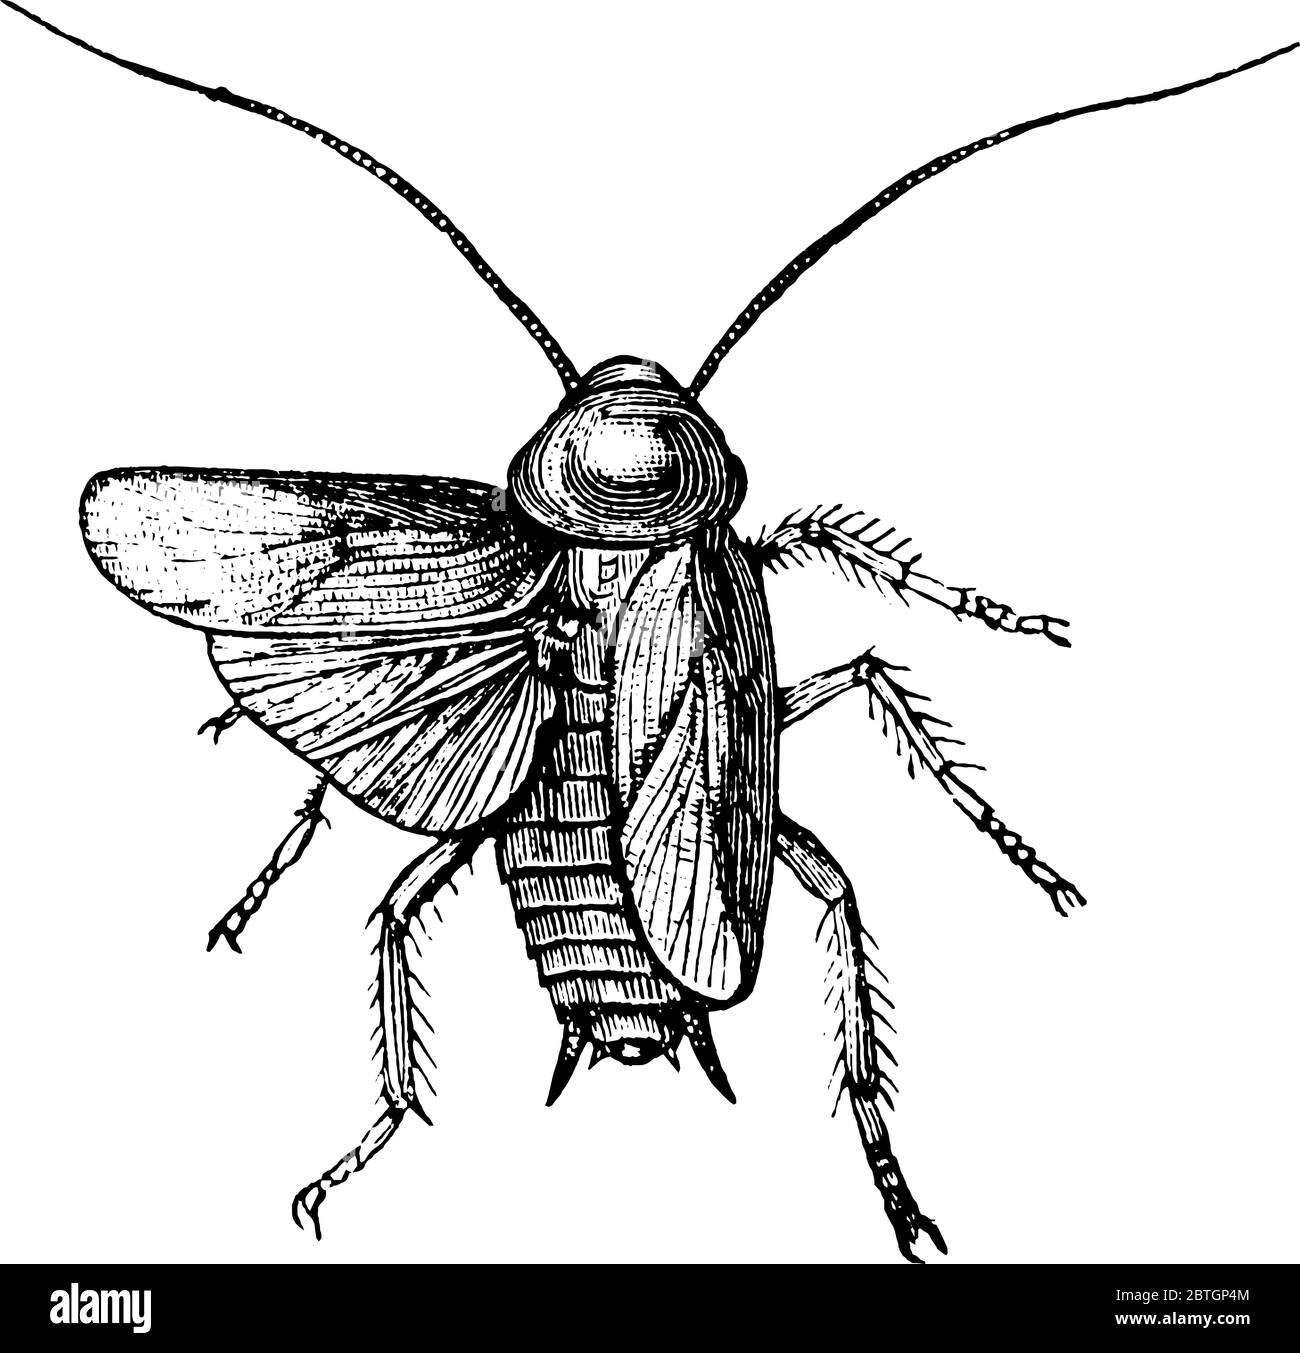 Scarafaggio è un insetto con due ali e due antenne lunghe, disegno di linea vintage o illustrazione di incisione. Illustrazione Vettoriale